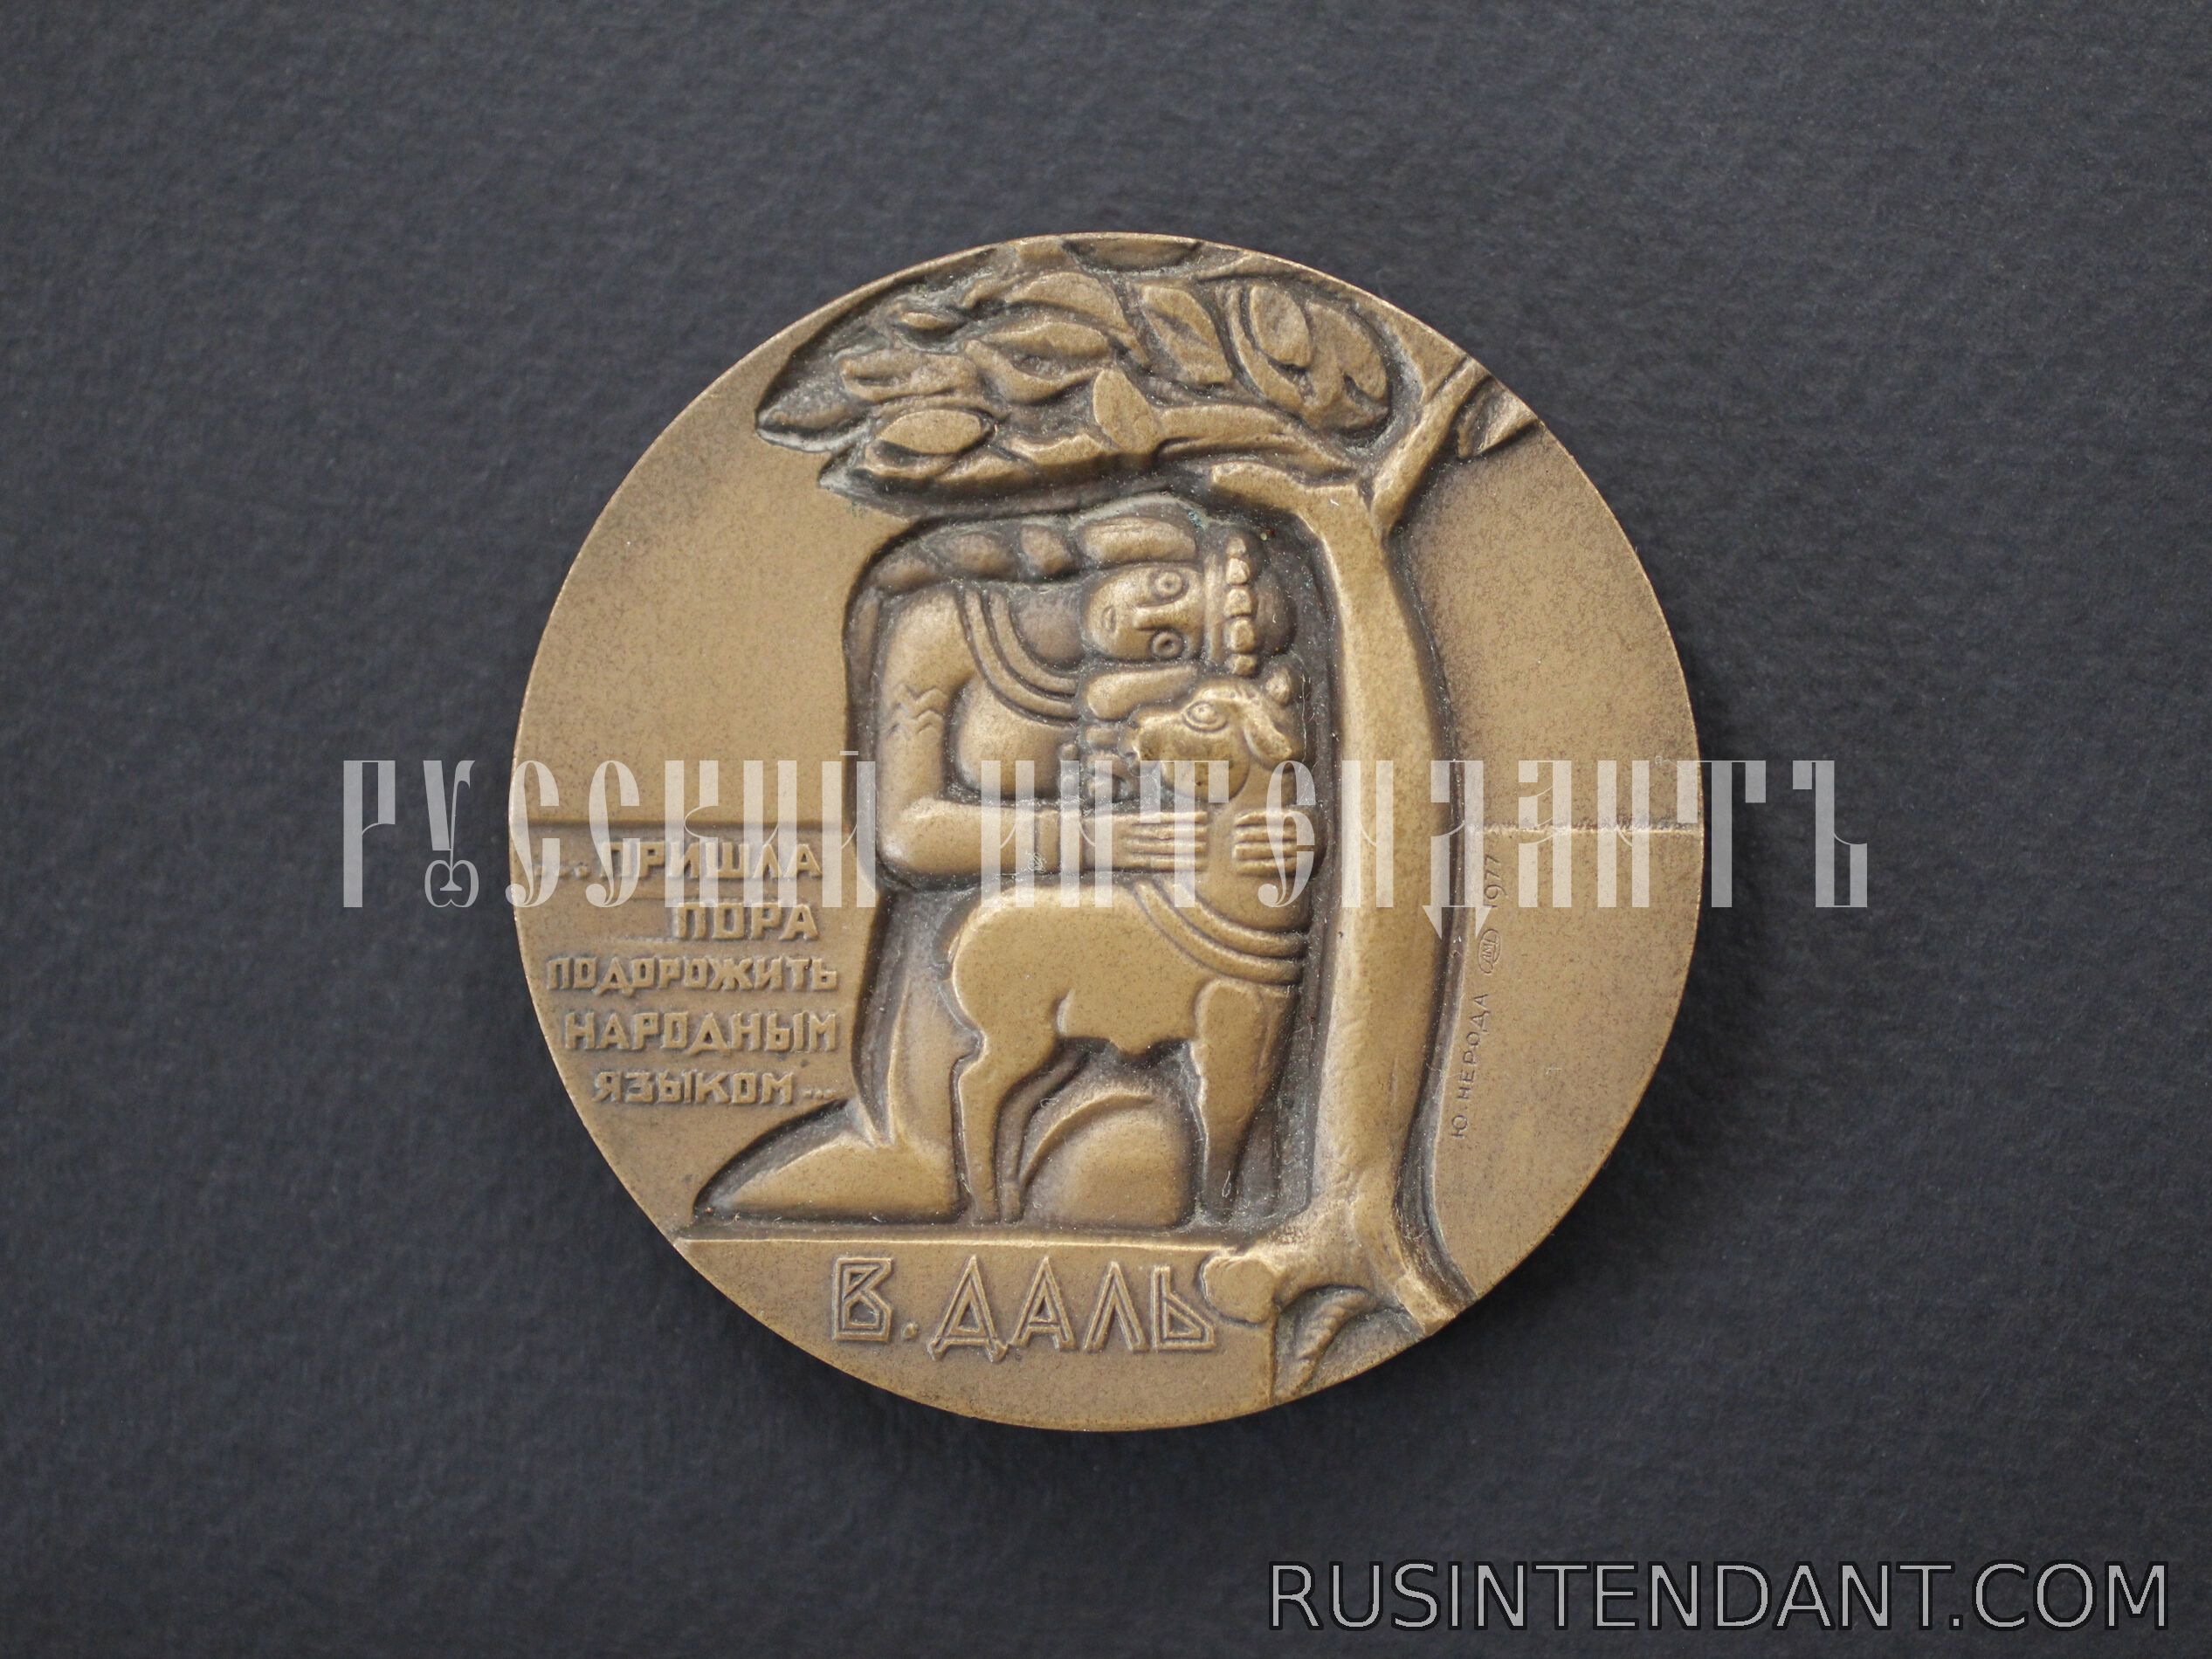 Фото 2: Настольная медаль «В. Даль» 